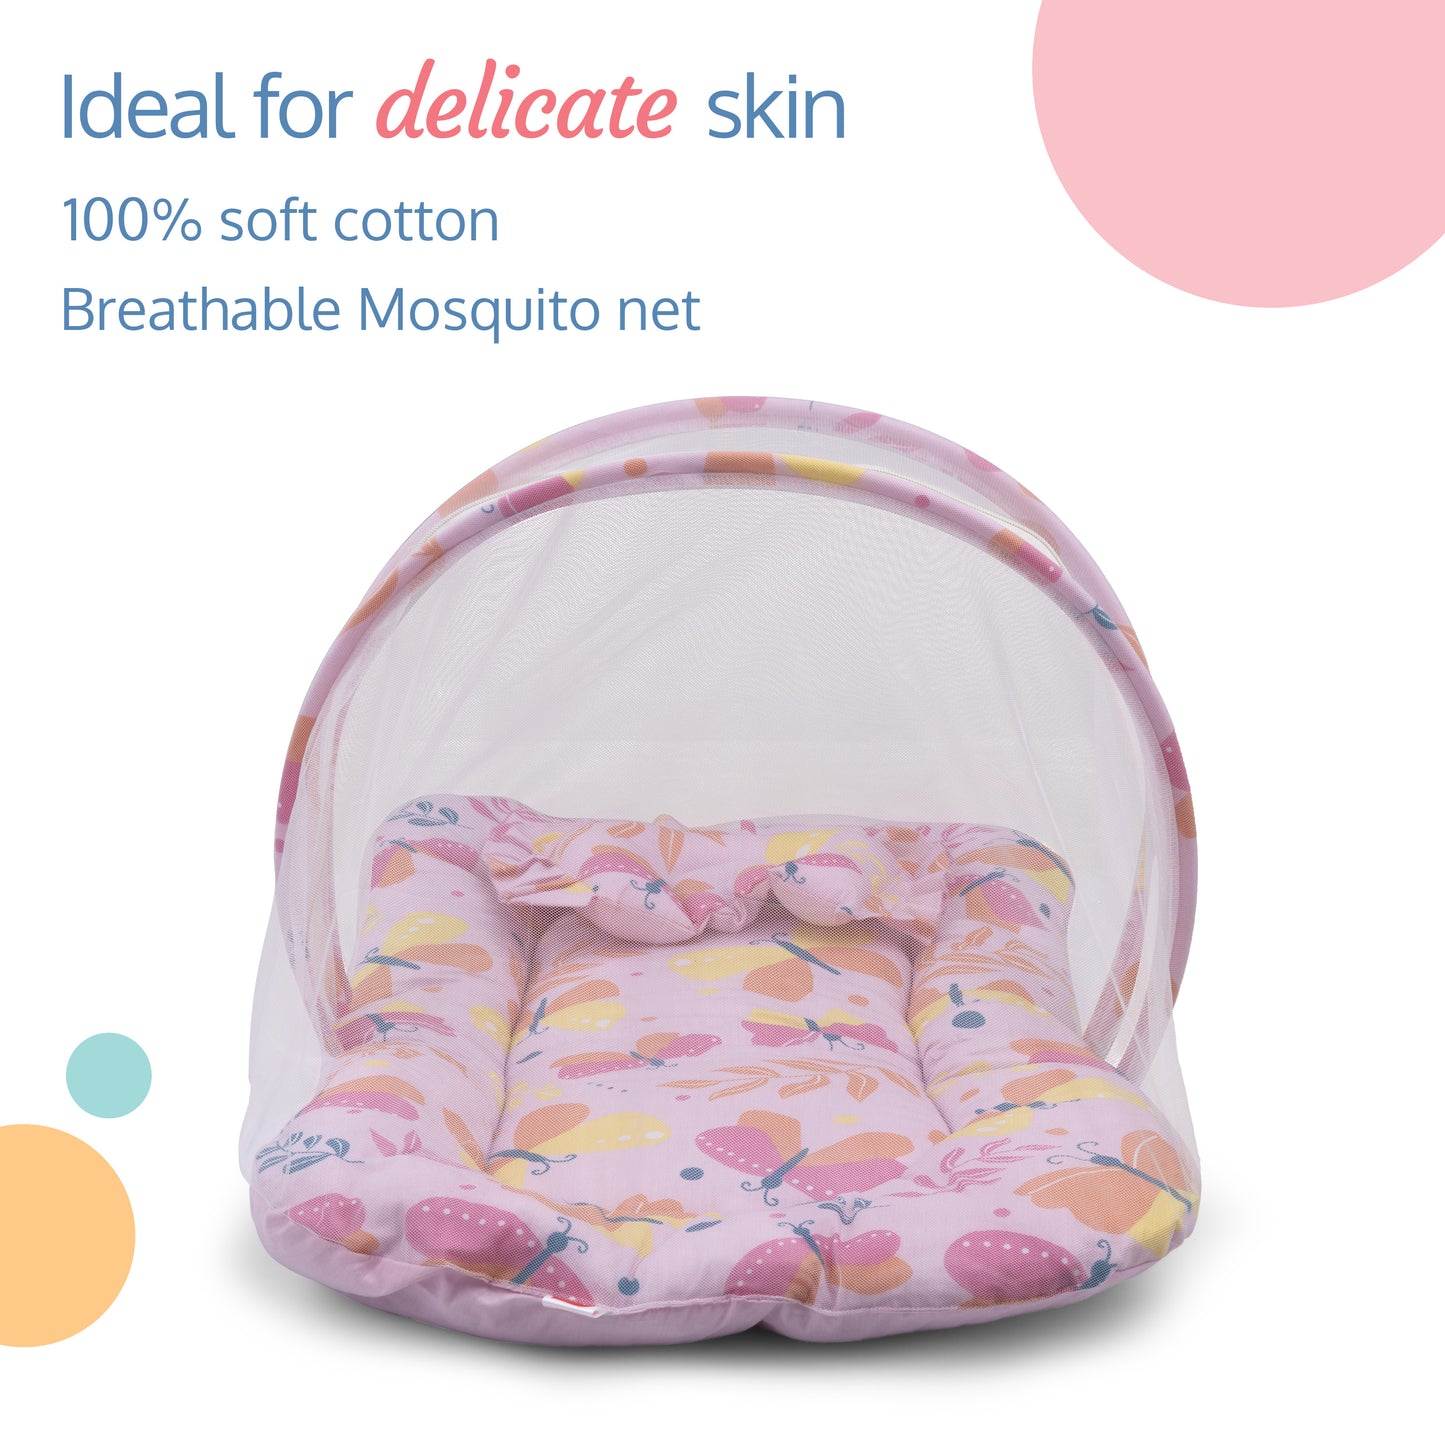 LuvLap Net Pillow Mattress Pink Butterfly Print